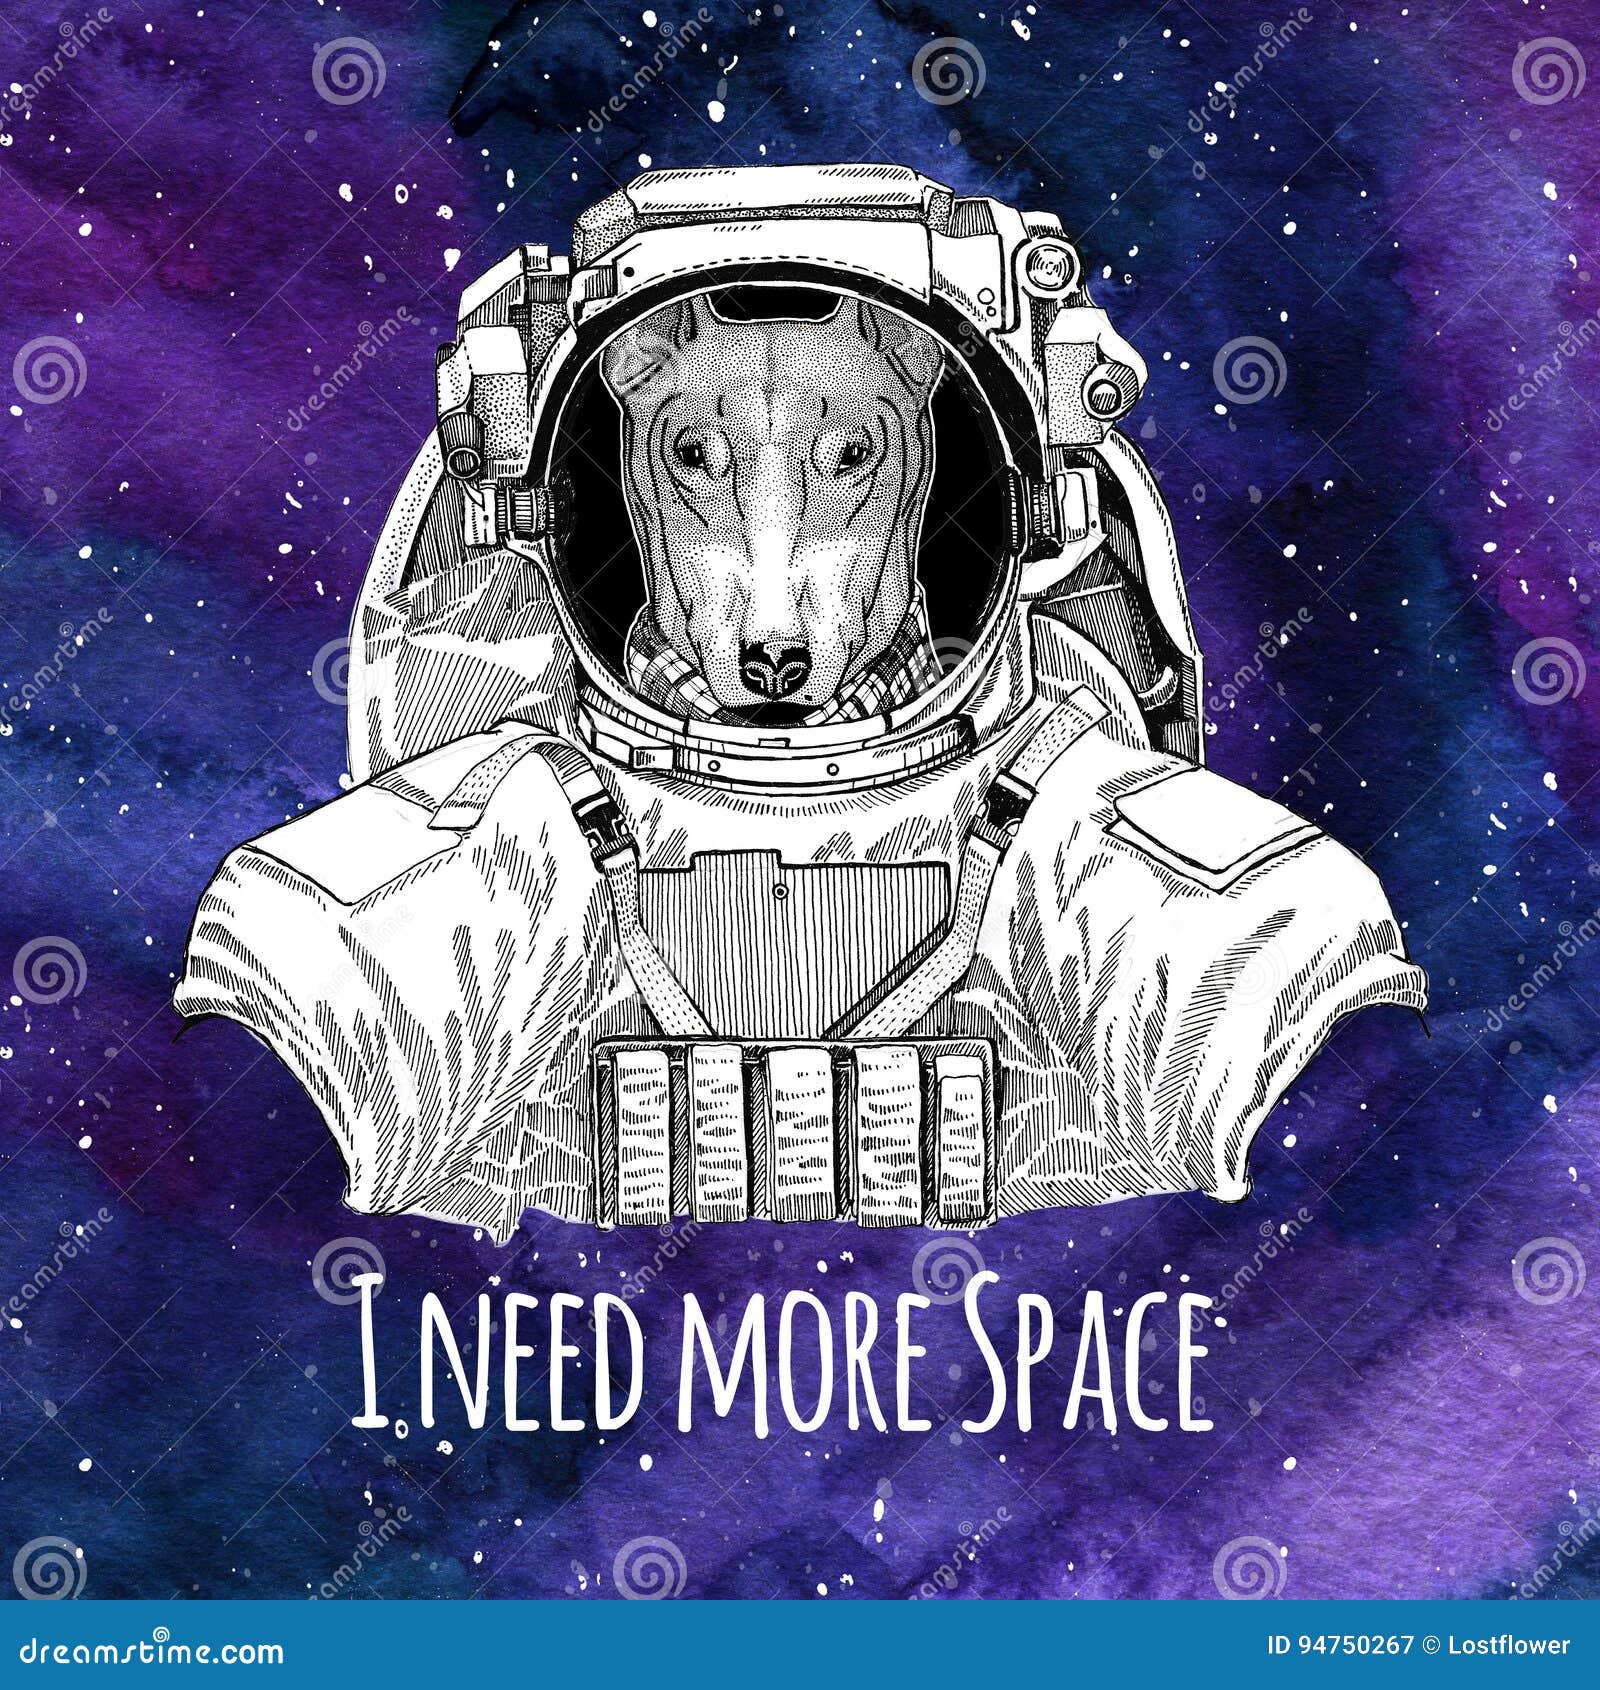 Chú chó phi hành gia giàu năng lượng này sẽ đưa bạn vào một chuyến phiêu lưu không tưởng. Quan sát chúng trang bị trang phục phi hành gia và khám phá không gian, bạn sẽ cảm thấy như mình đang thực sự ở trong một tàu vũ trụ.